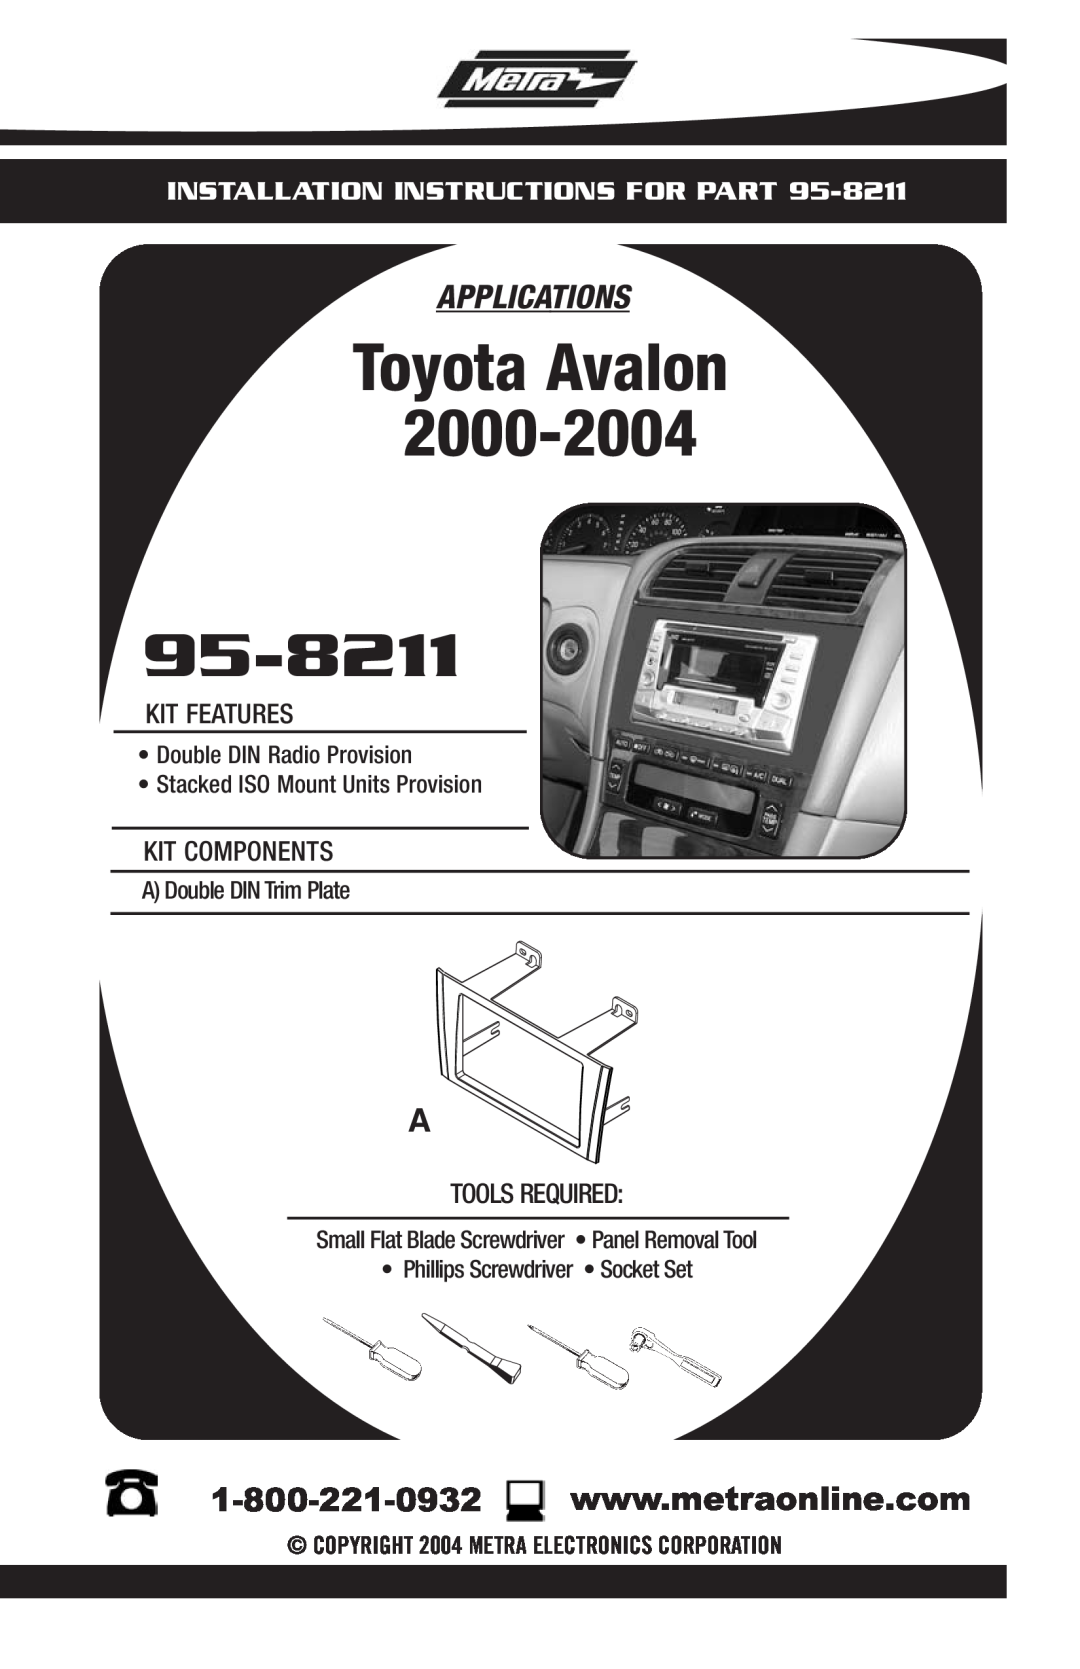 Toyota 95-8211 installation instructions Toyota Avalon, Applications, Installation Instructions For Part 